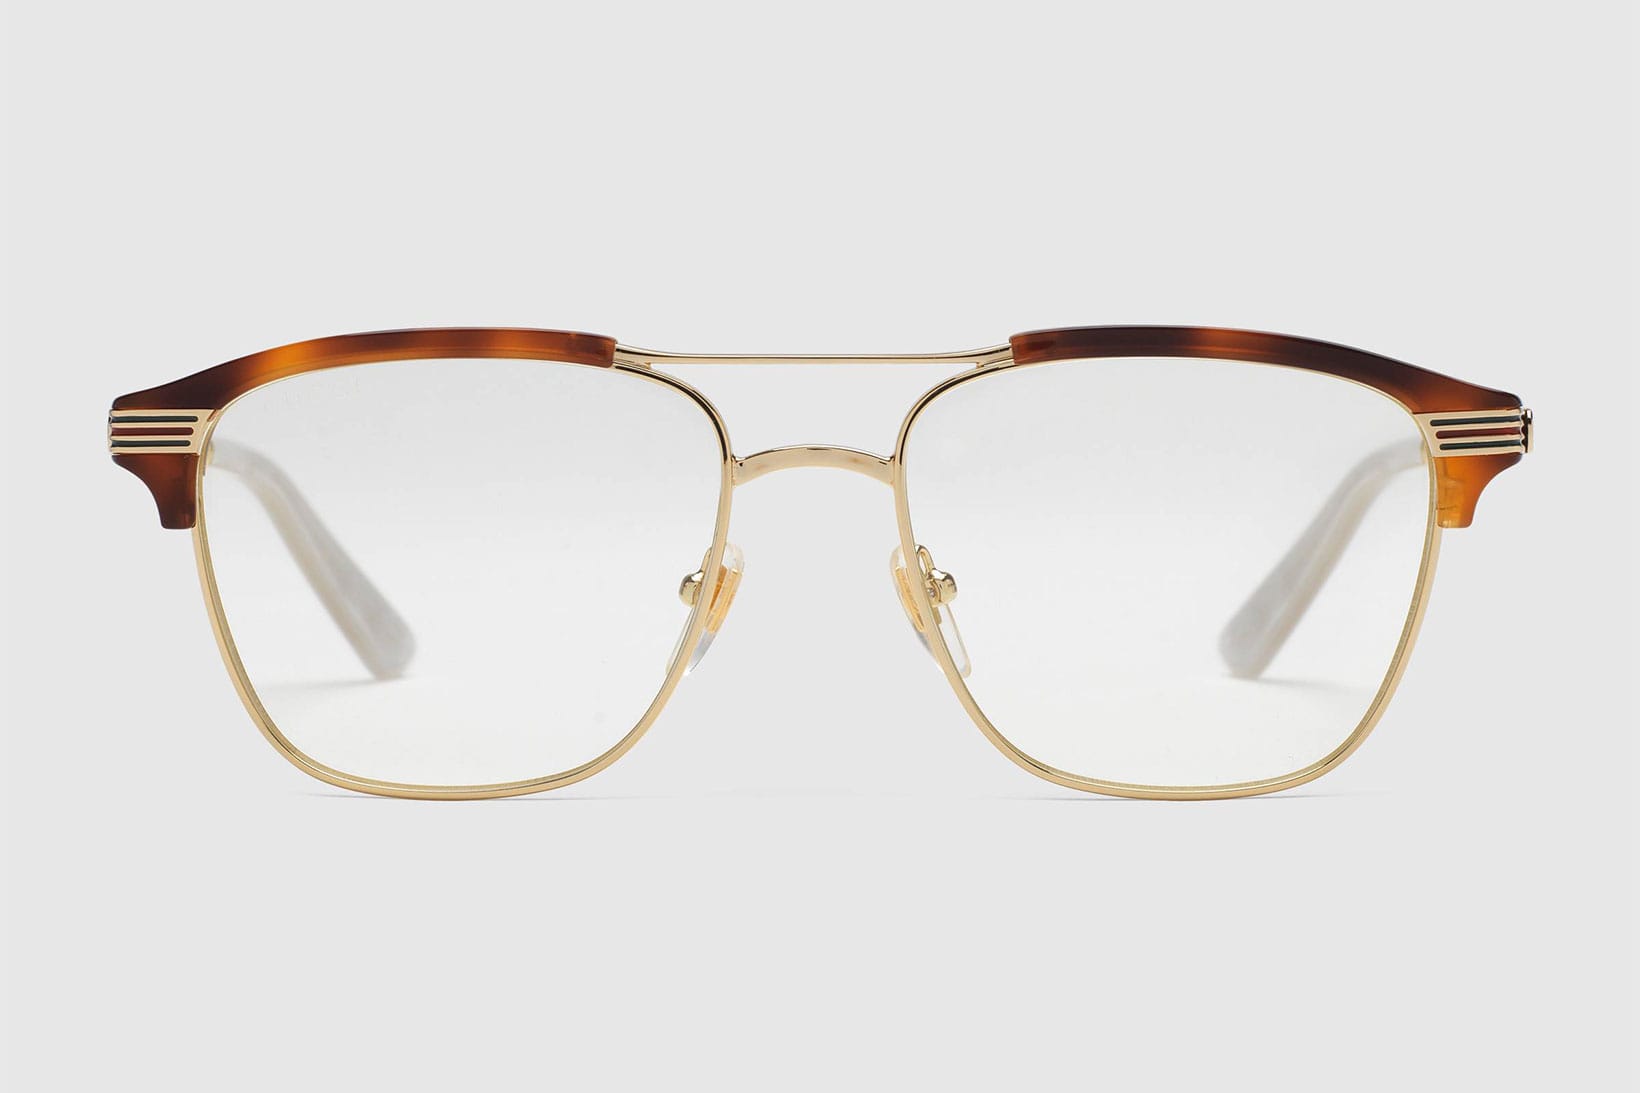 gucci eyeglass frames 2018, OFF 73%,Buy!